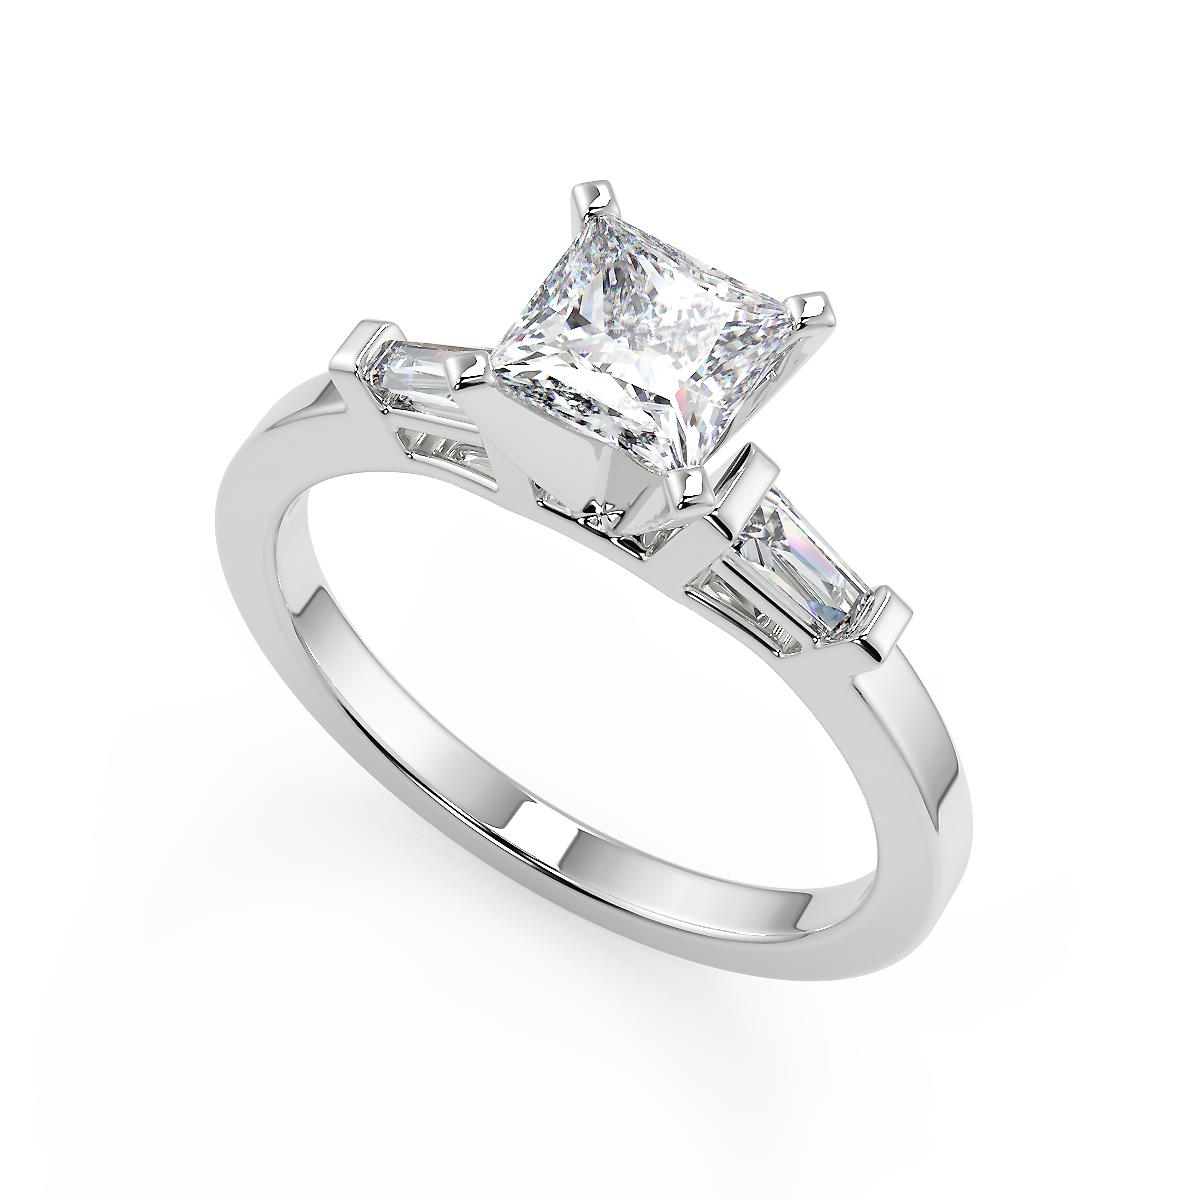 1.5 Ct Princess Cut Baguette Accents Diamond Engagement Ring Set VS1 H 18k | eBay